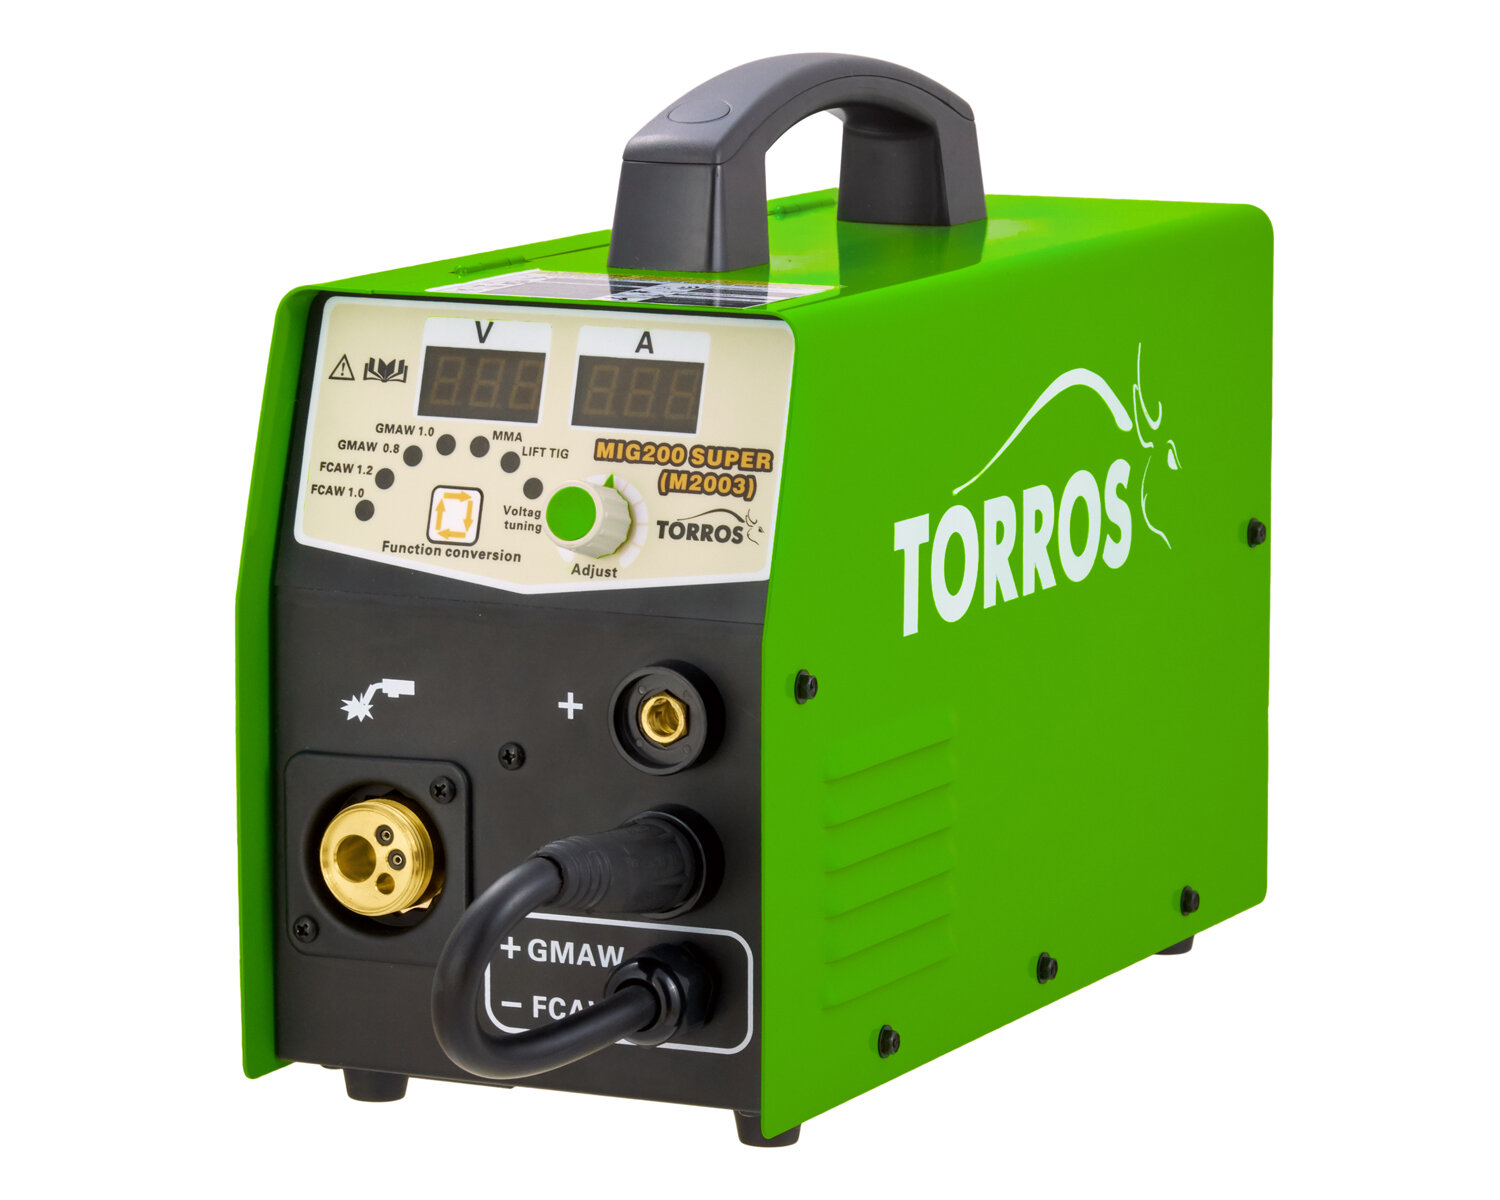 Сварочный аппарат TORROS MIG 200 Super (M2003)